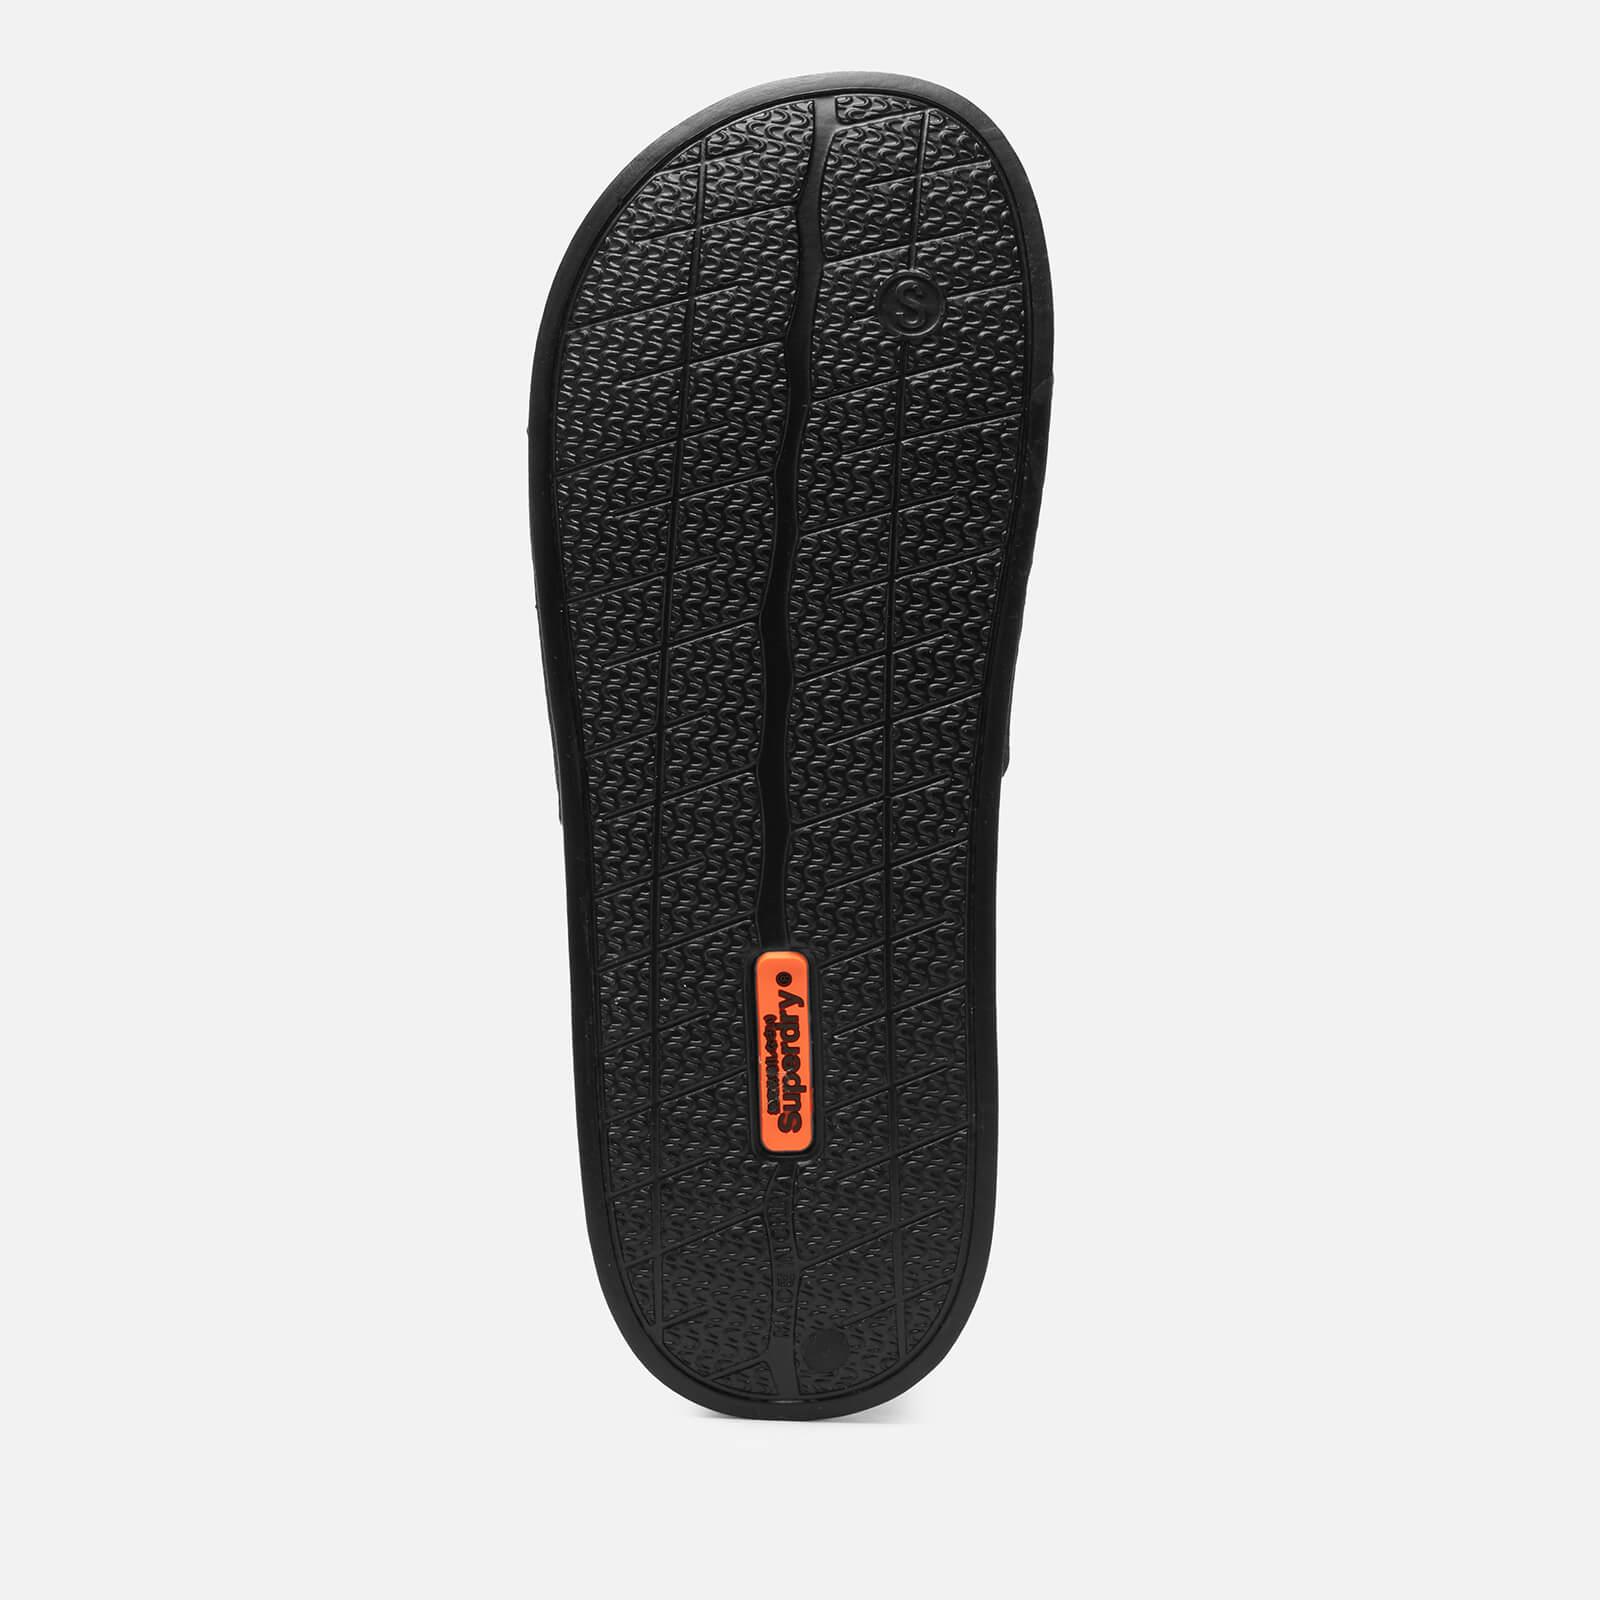 Superdry Aop Beach Slide Sandals in Black for Men - Lyst